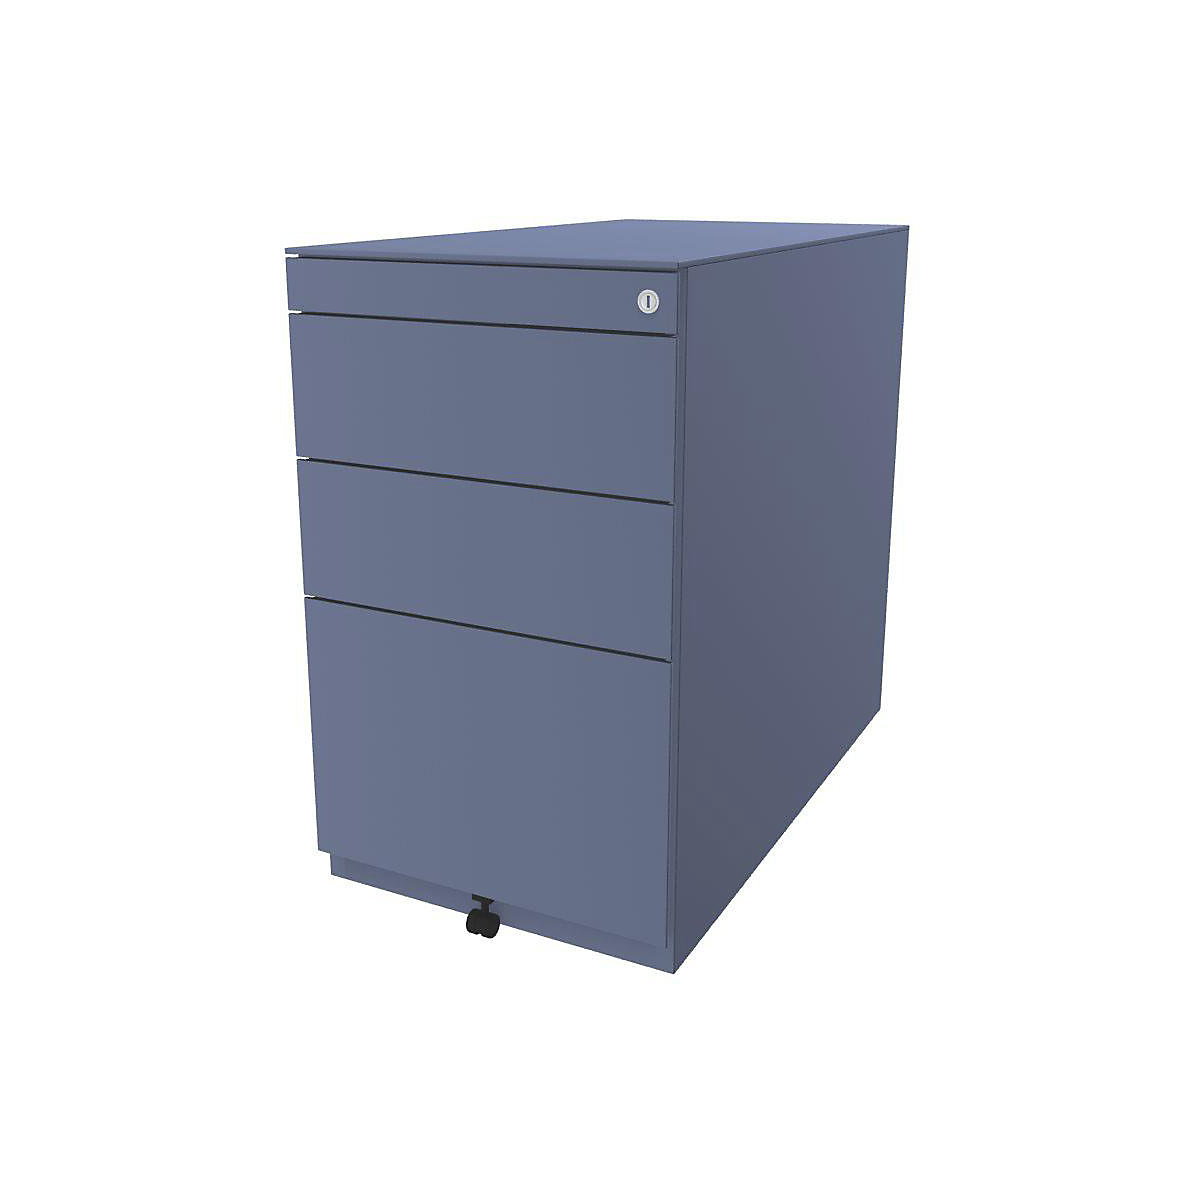 BISLEY Standcontainer Note™, mit 2 Universalschubladen, 1 Hängeregistratur, mit Top, Tiefe 775 mm, blau